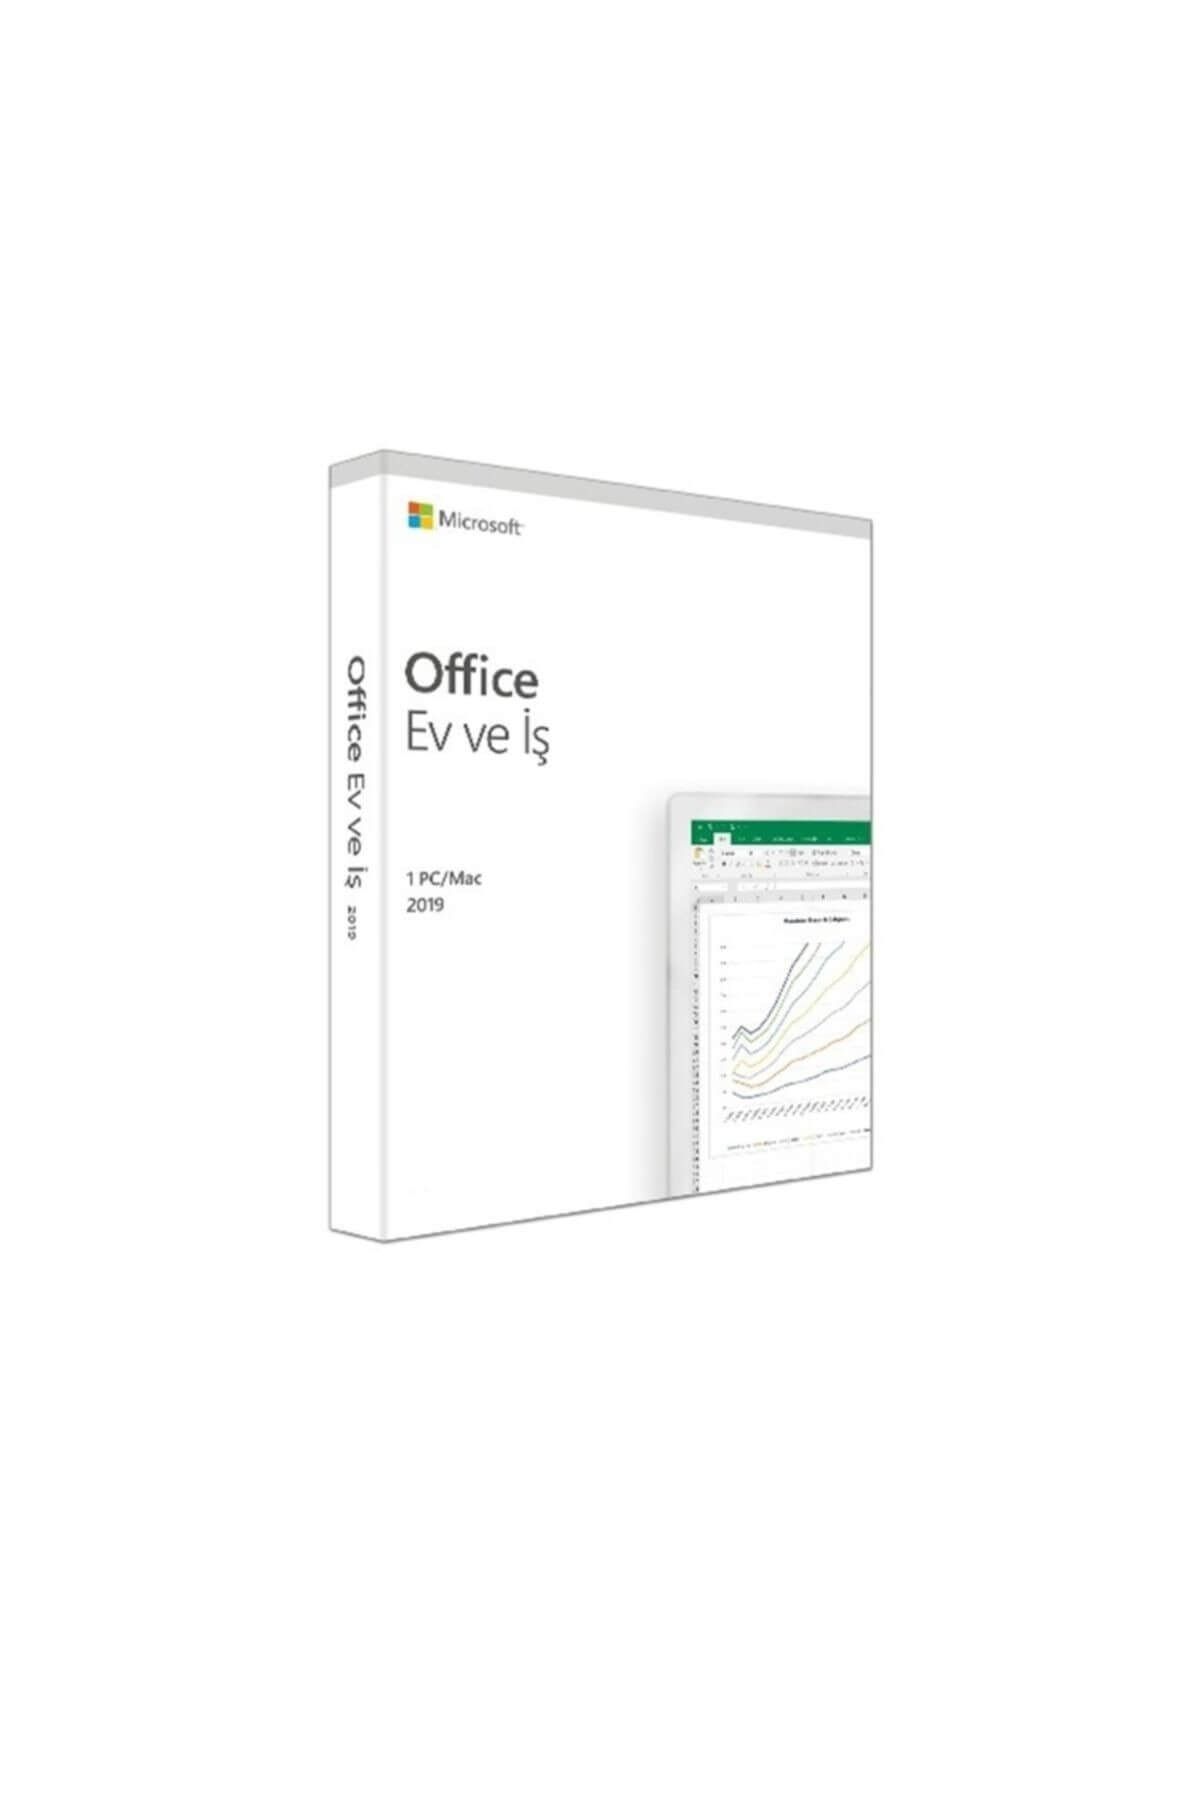 Microsoft Office 2019 Ev Ve Iş 32/64 Bit Türkçe Kutu T5d-03258